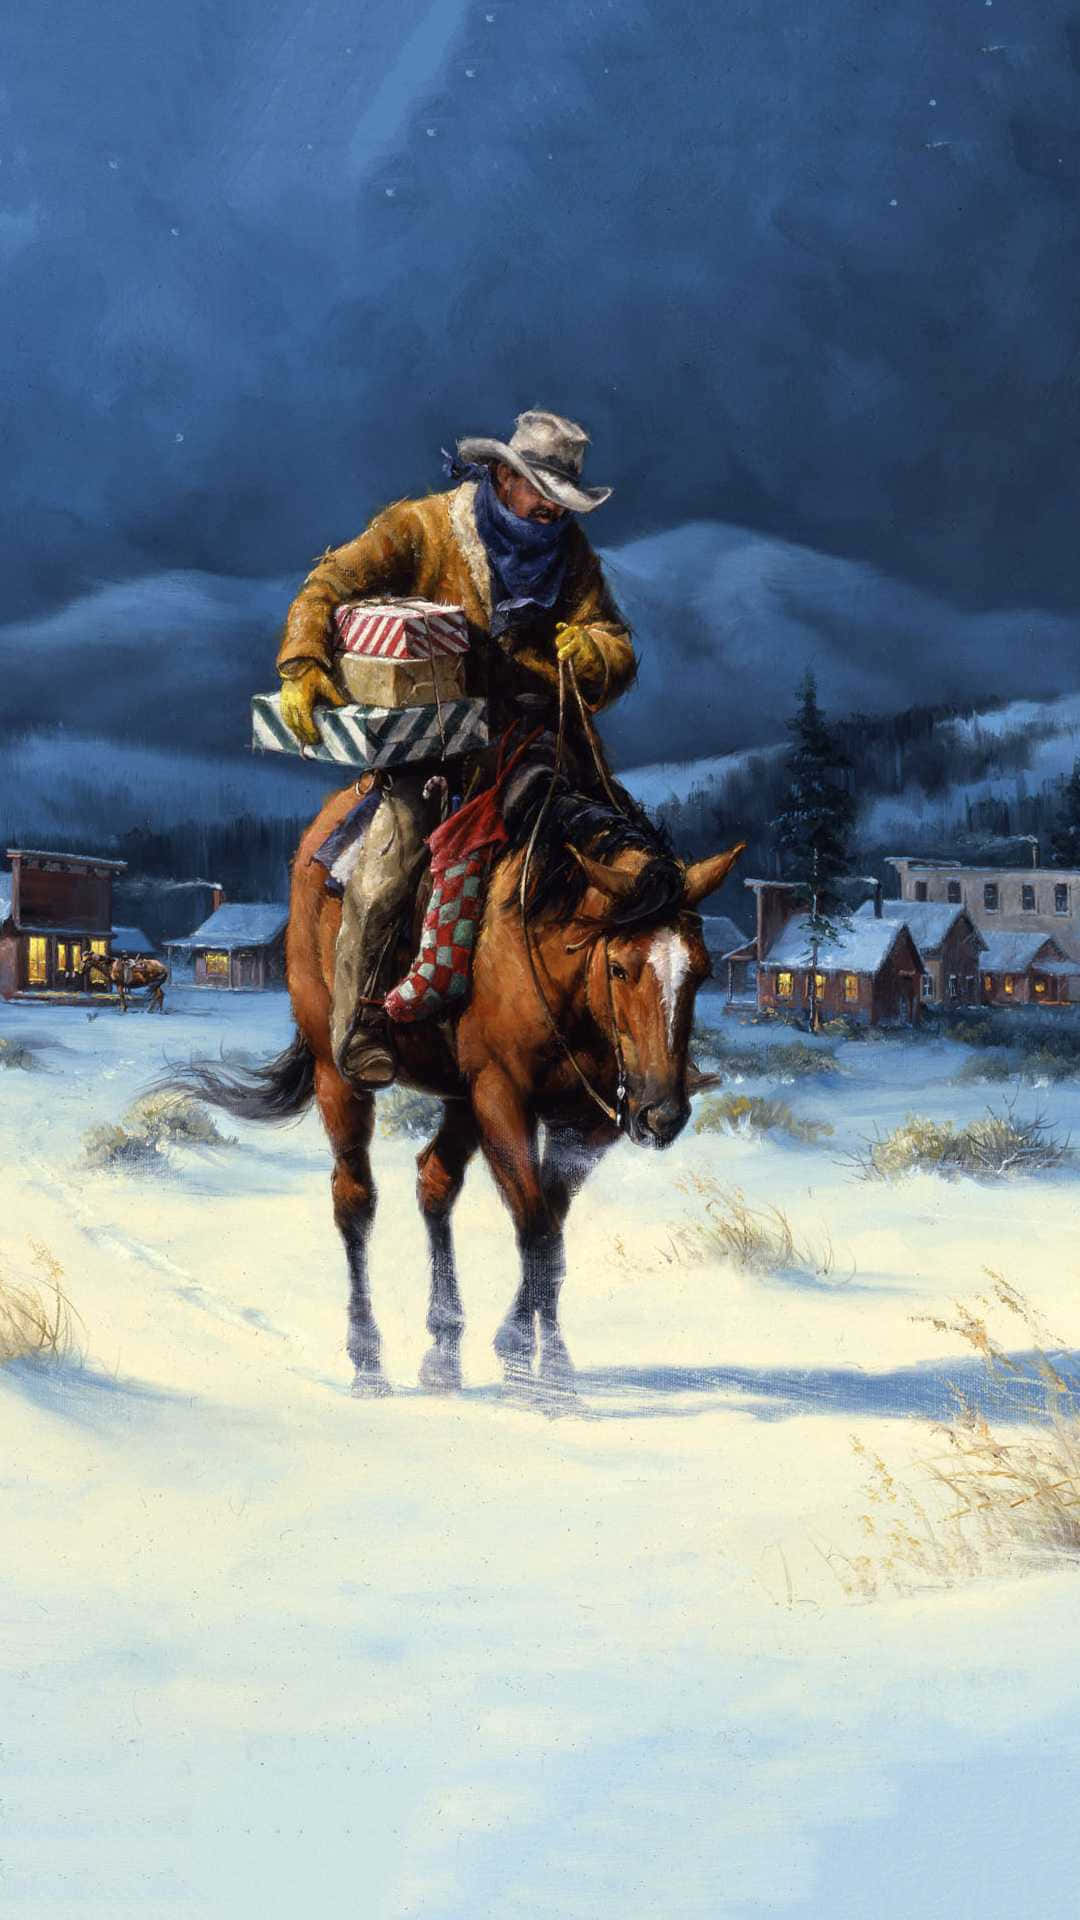 Billedeaf En Cowboy Der Pynter Sin Hest Med Et Julebånd. Wallpaper